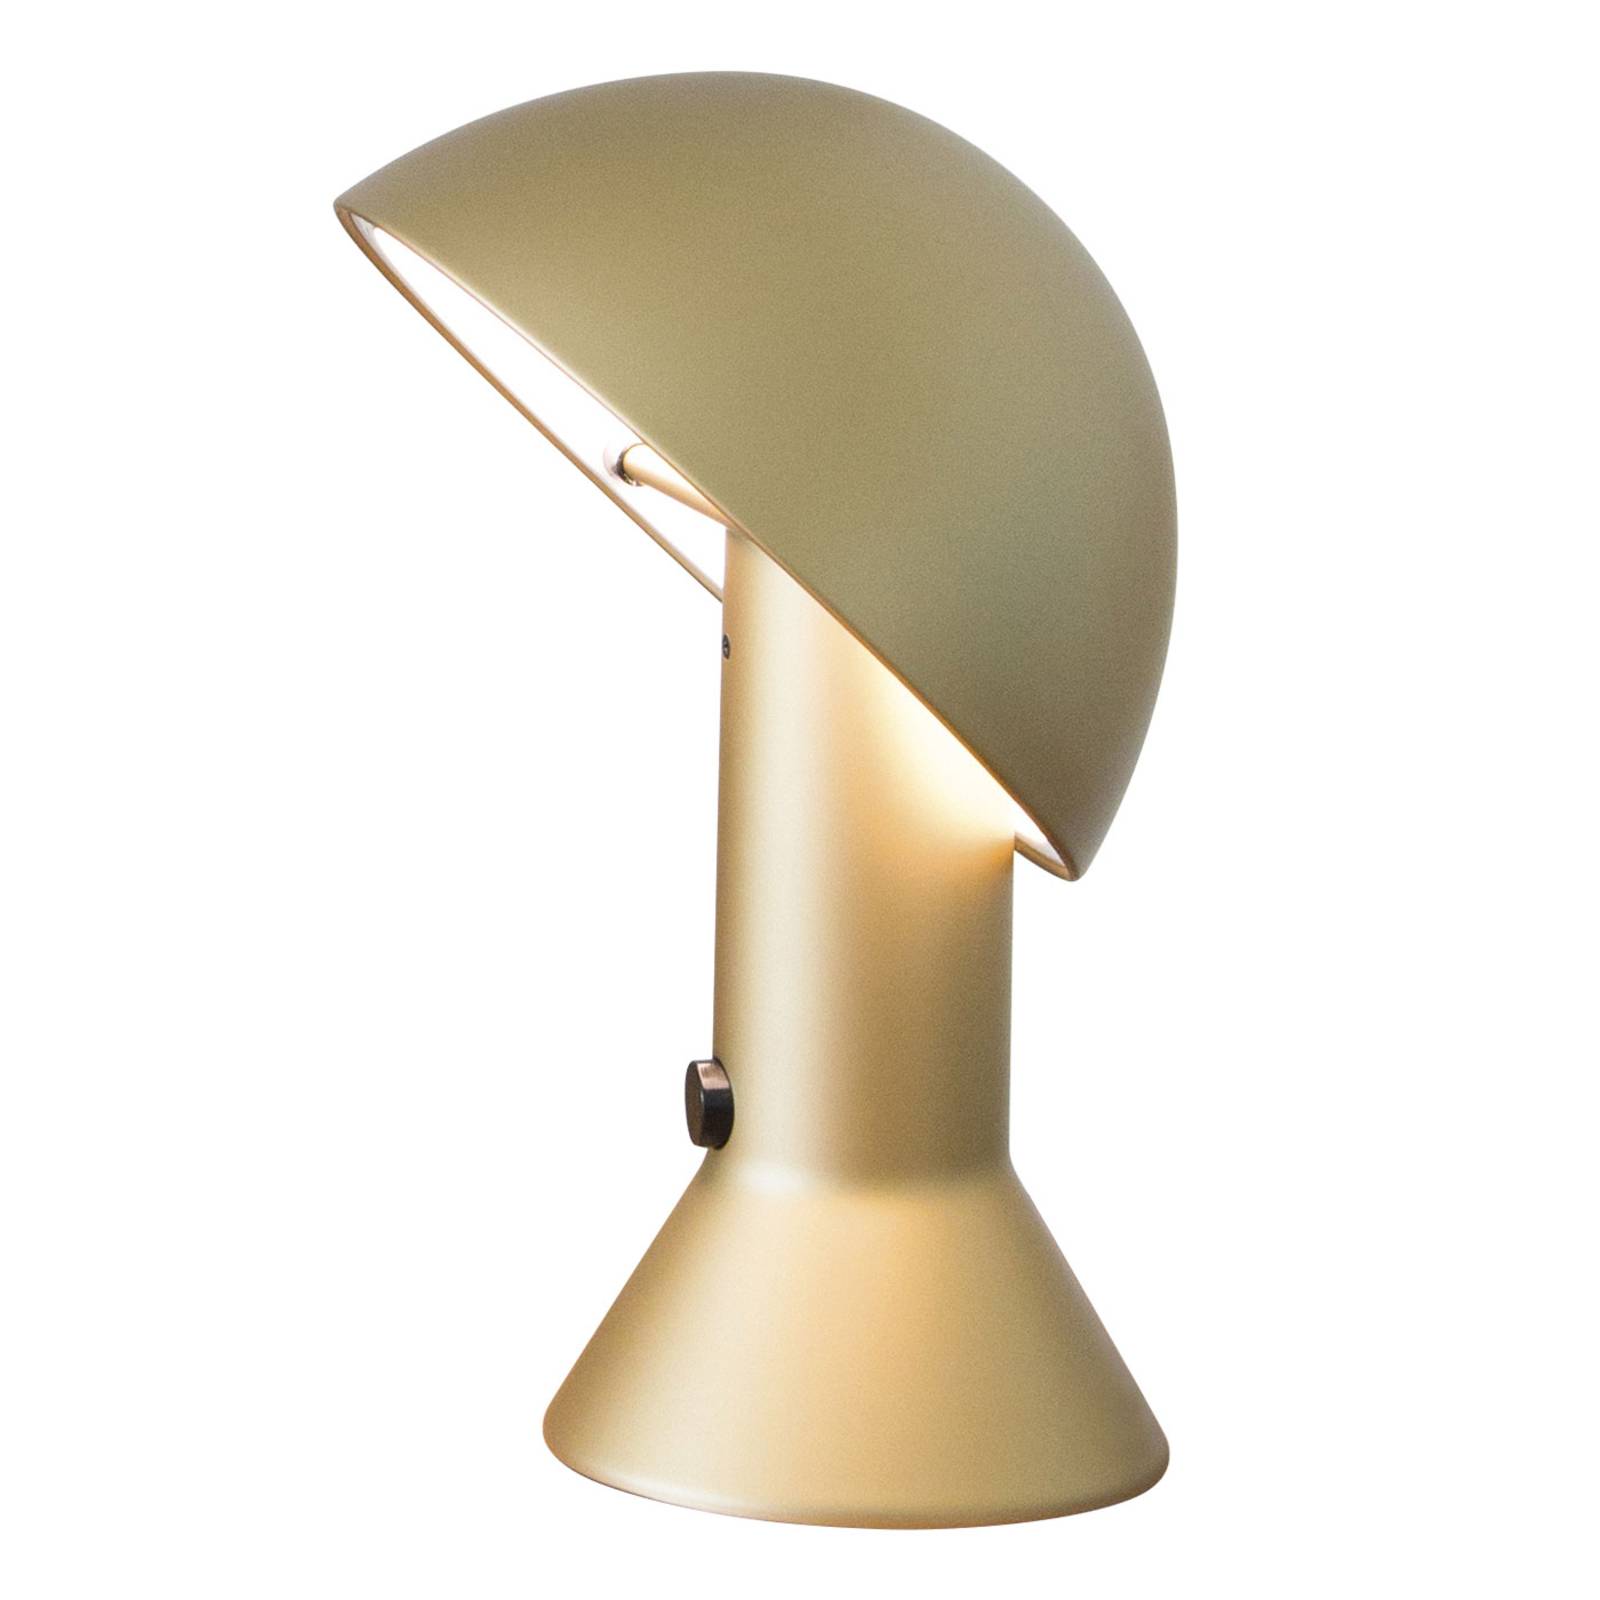 Image of Lampe à poser design ELMETTO blanche 8033383631945